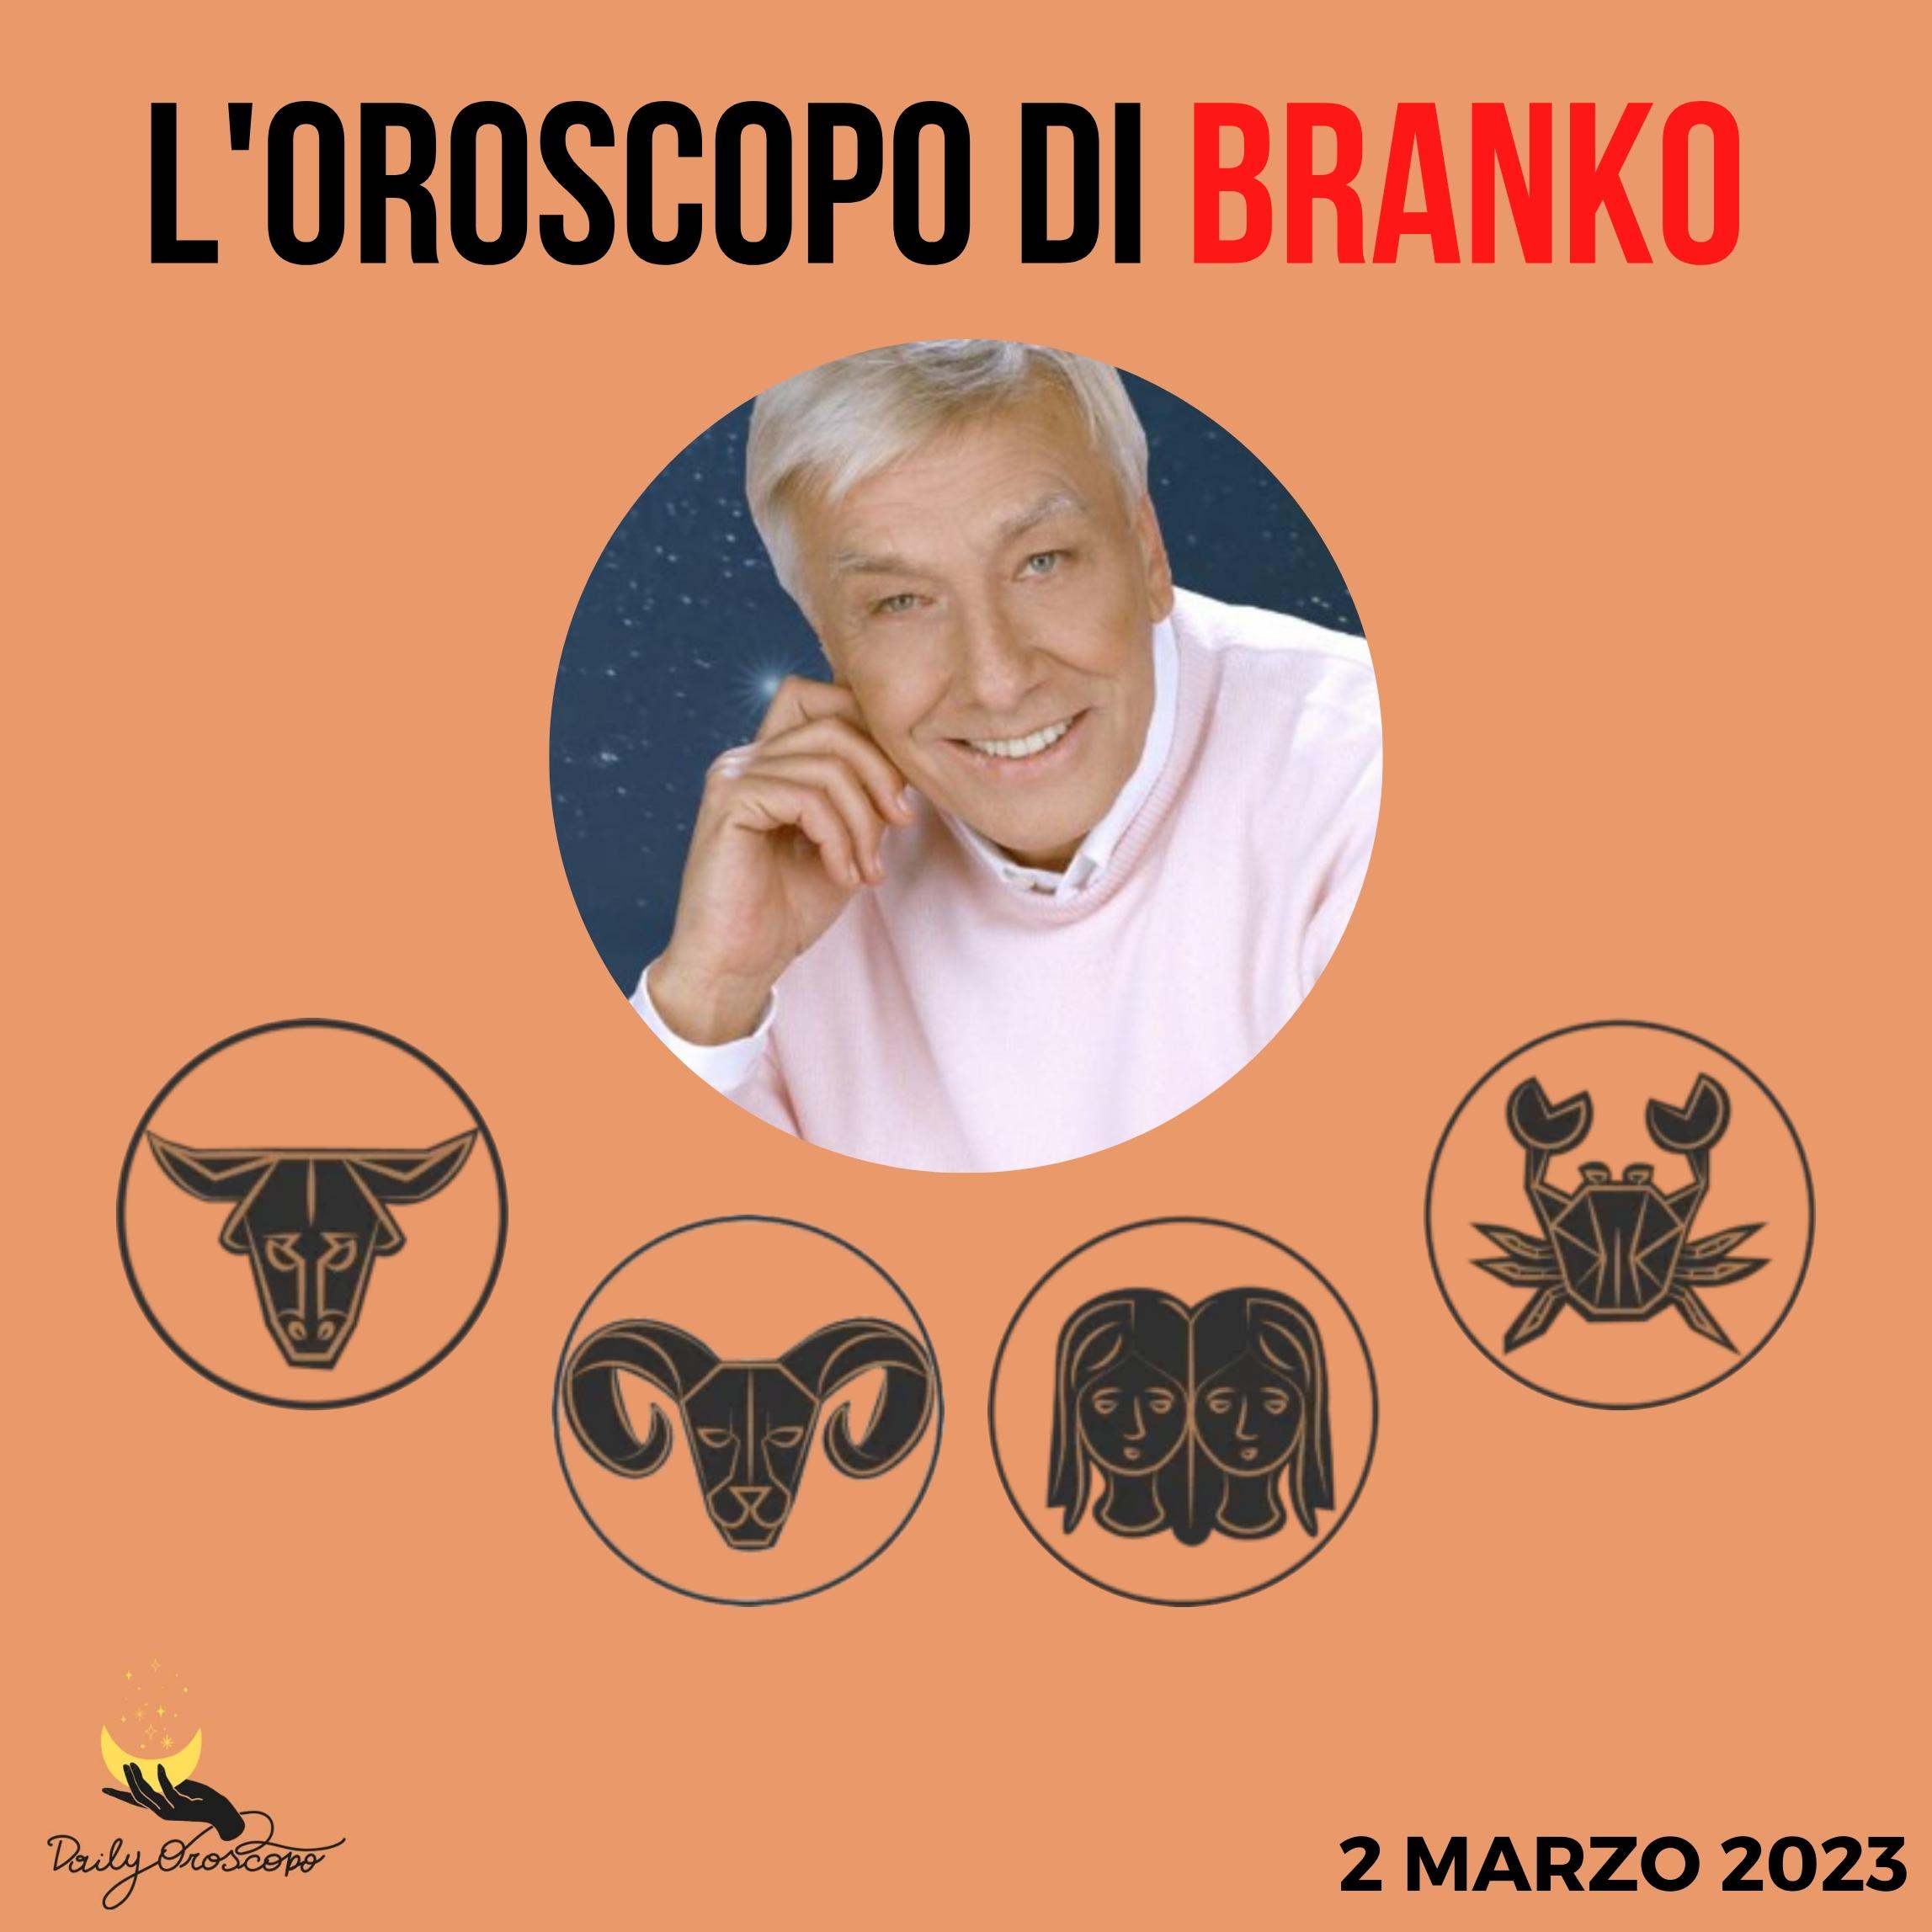 Oroscopo Branko di oggi 2 marzo: Toro, Ariete, Gemelli, Cancro